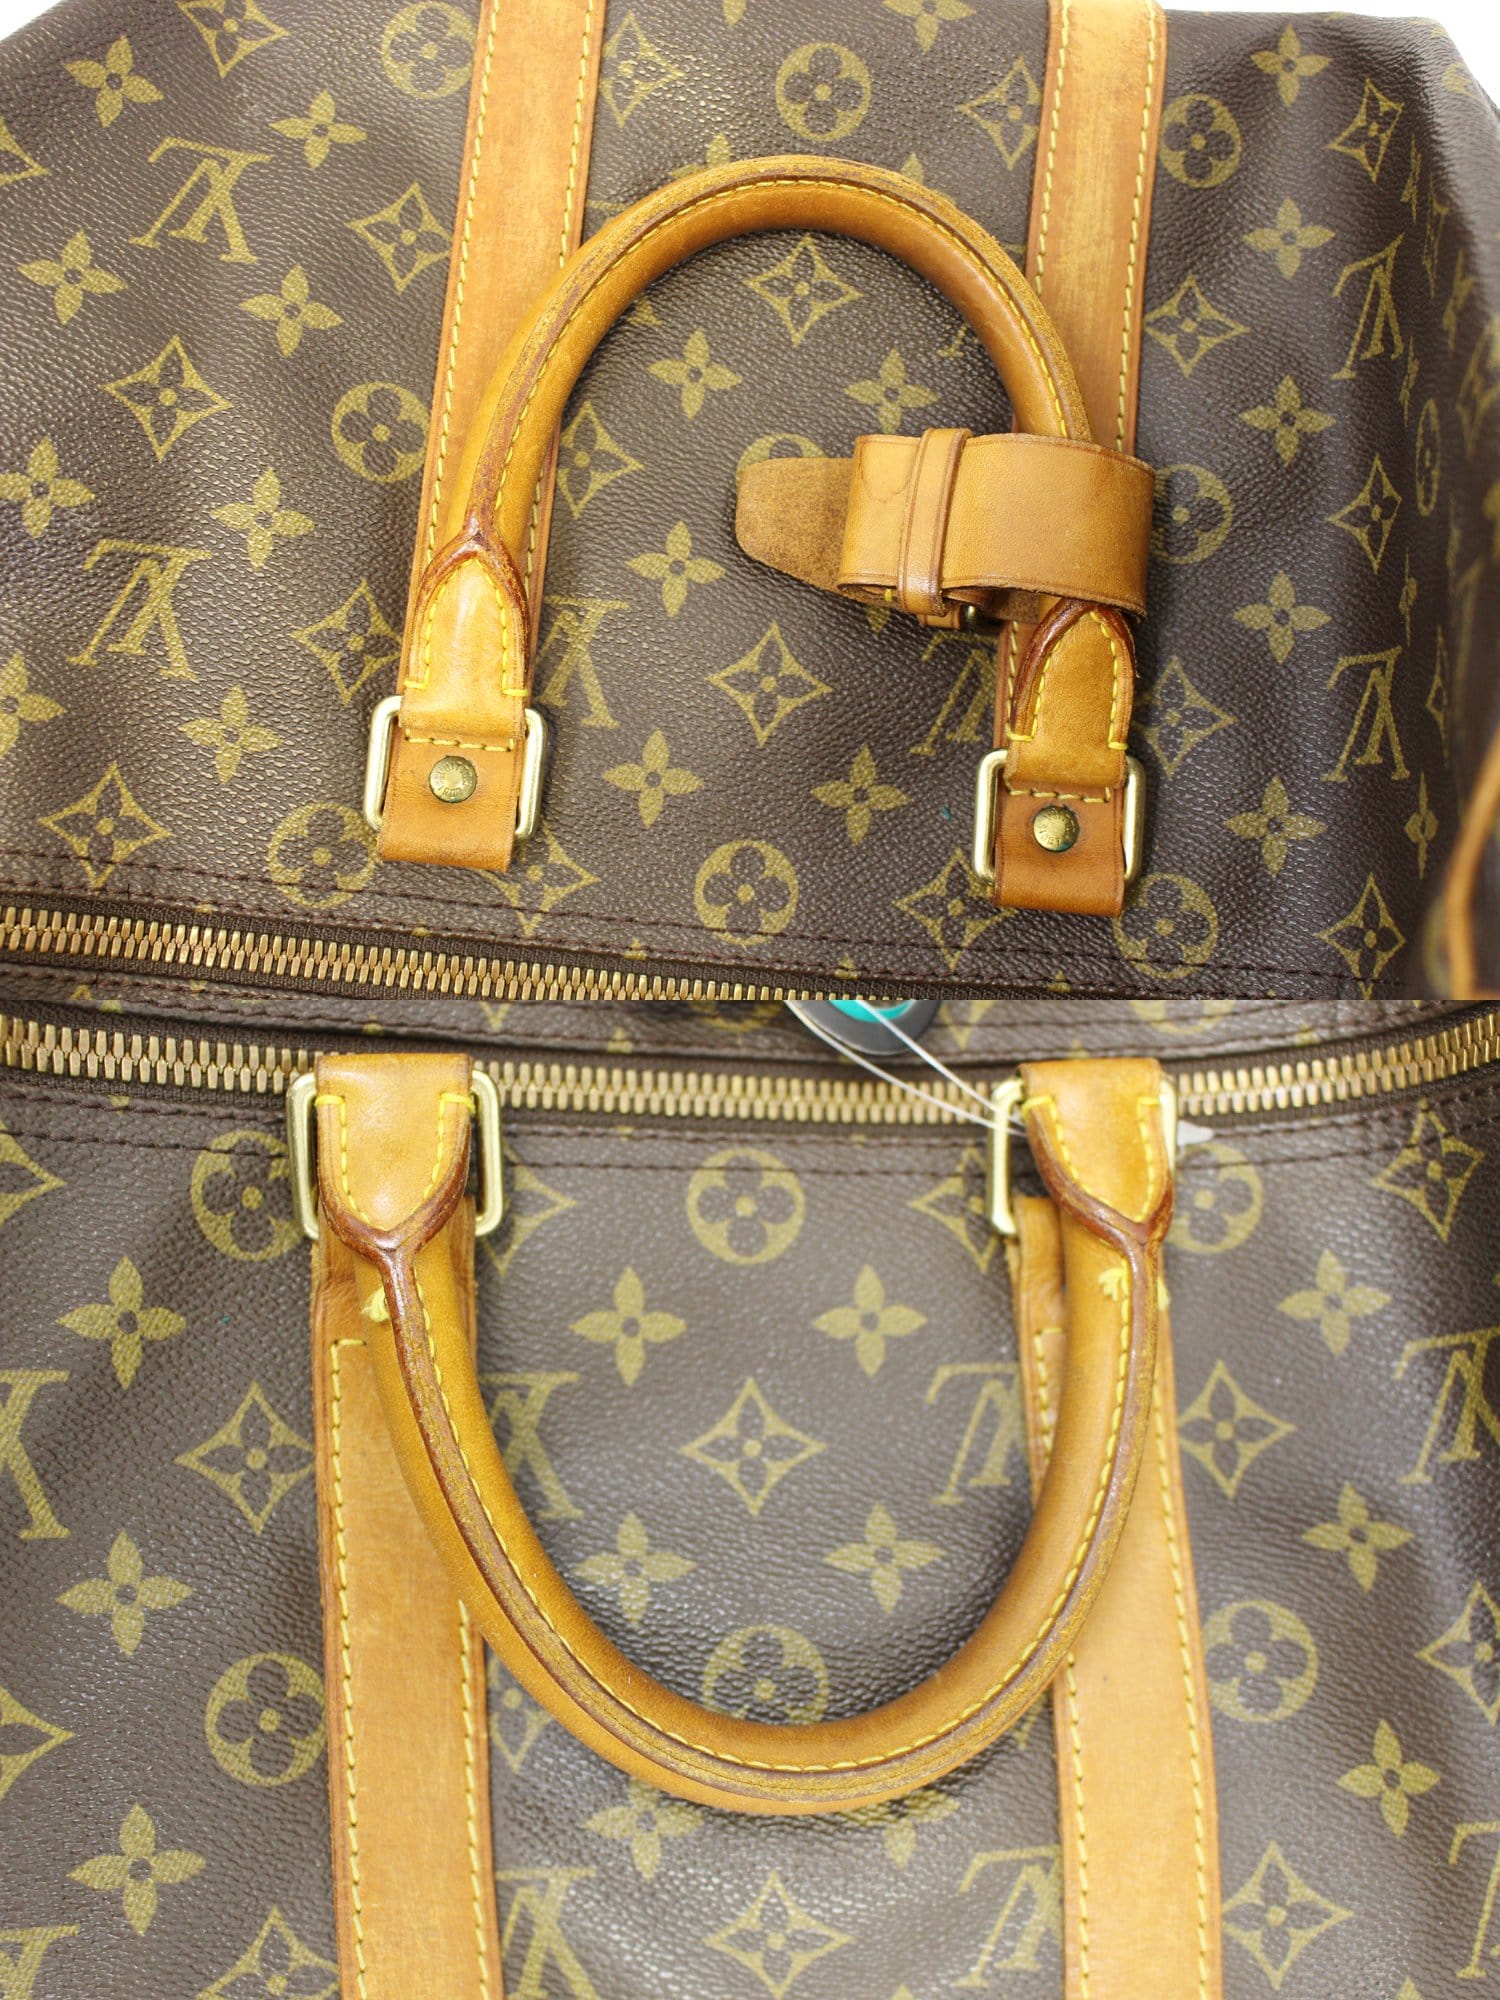 Louis Vuitton Big Duffle Bag | IQS Executive